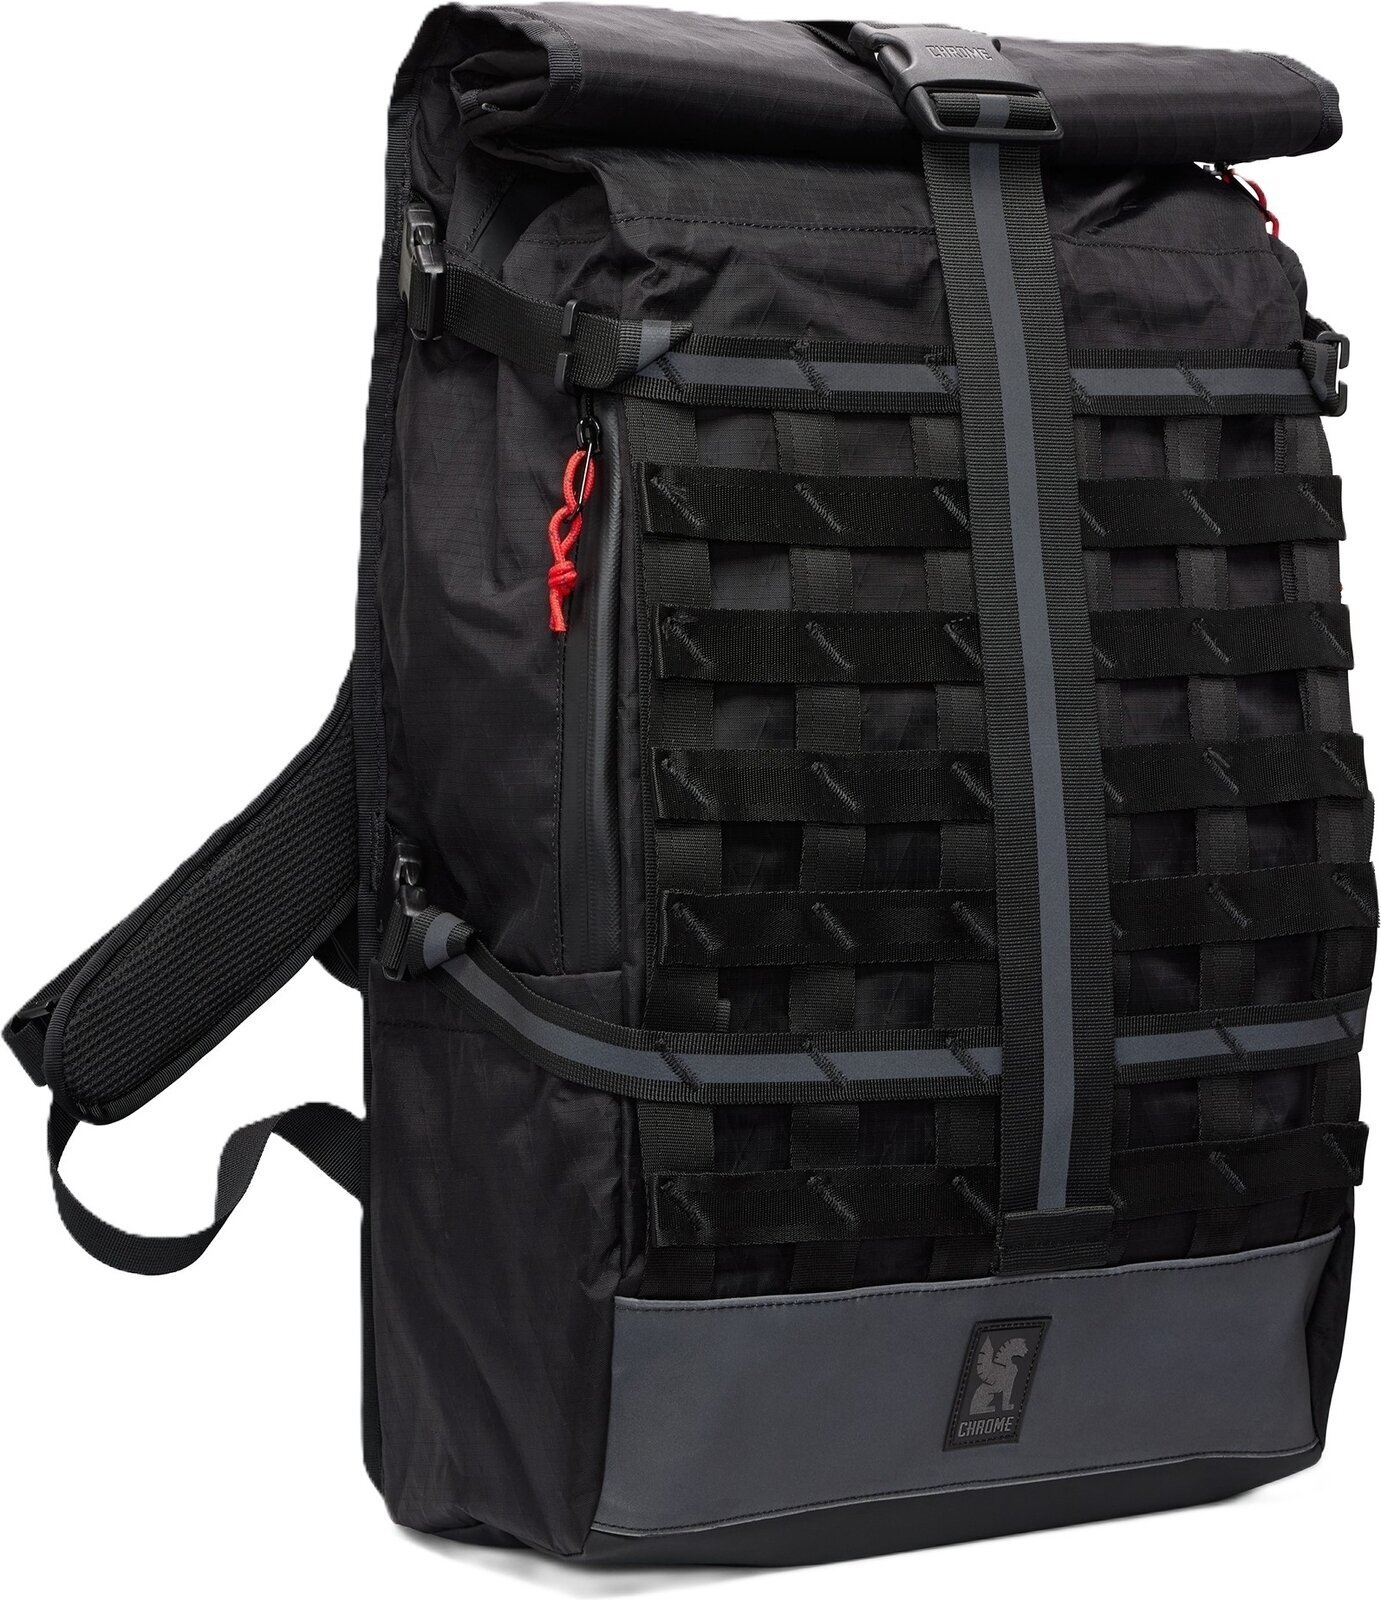 Lifestyle Backpack / Bag Chrome Barrage Backpack Reflective Black 34 L Backpack